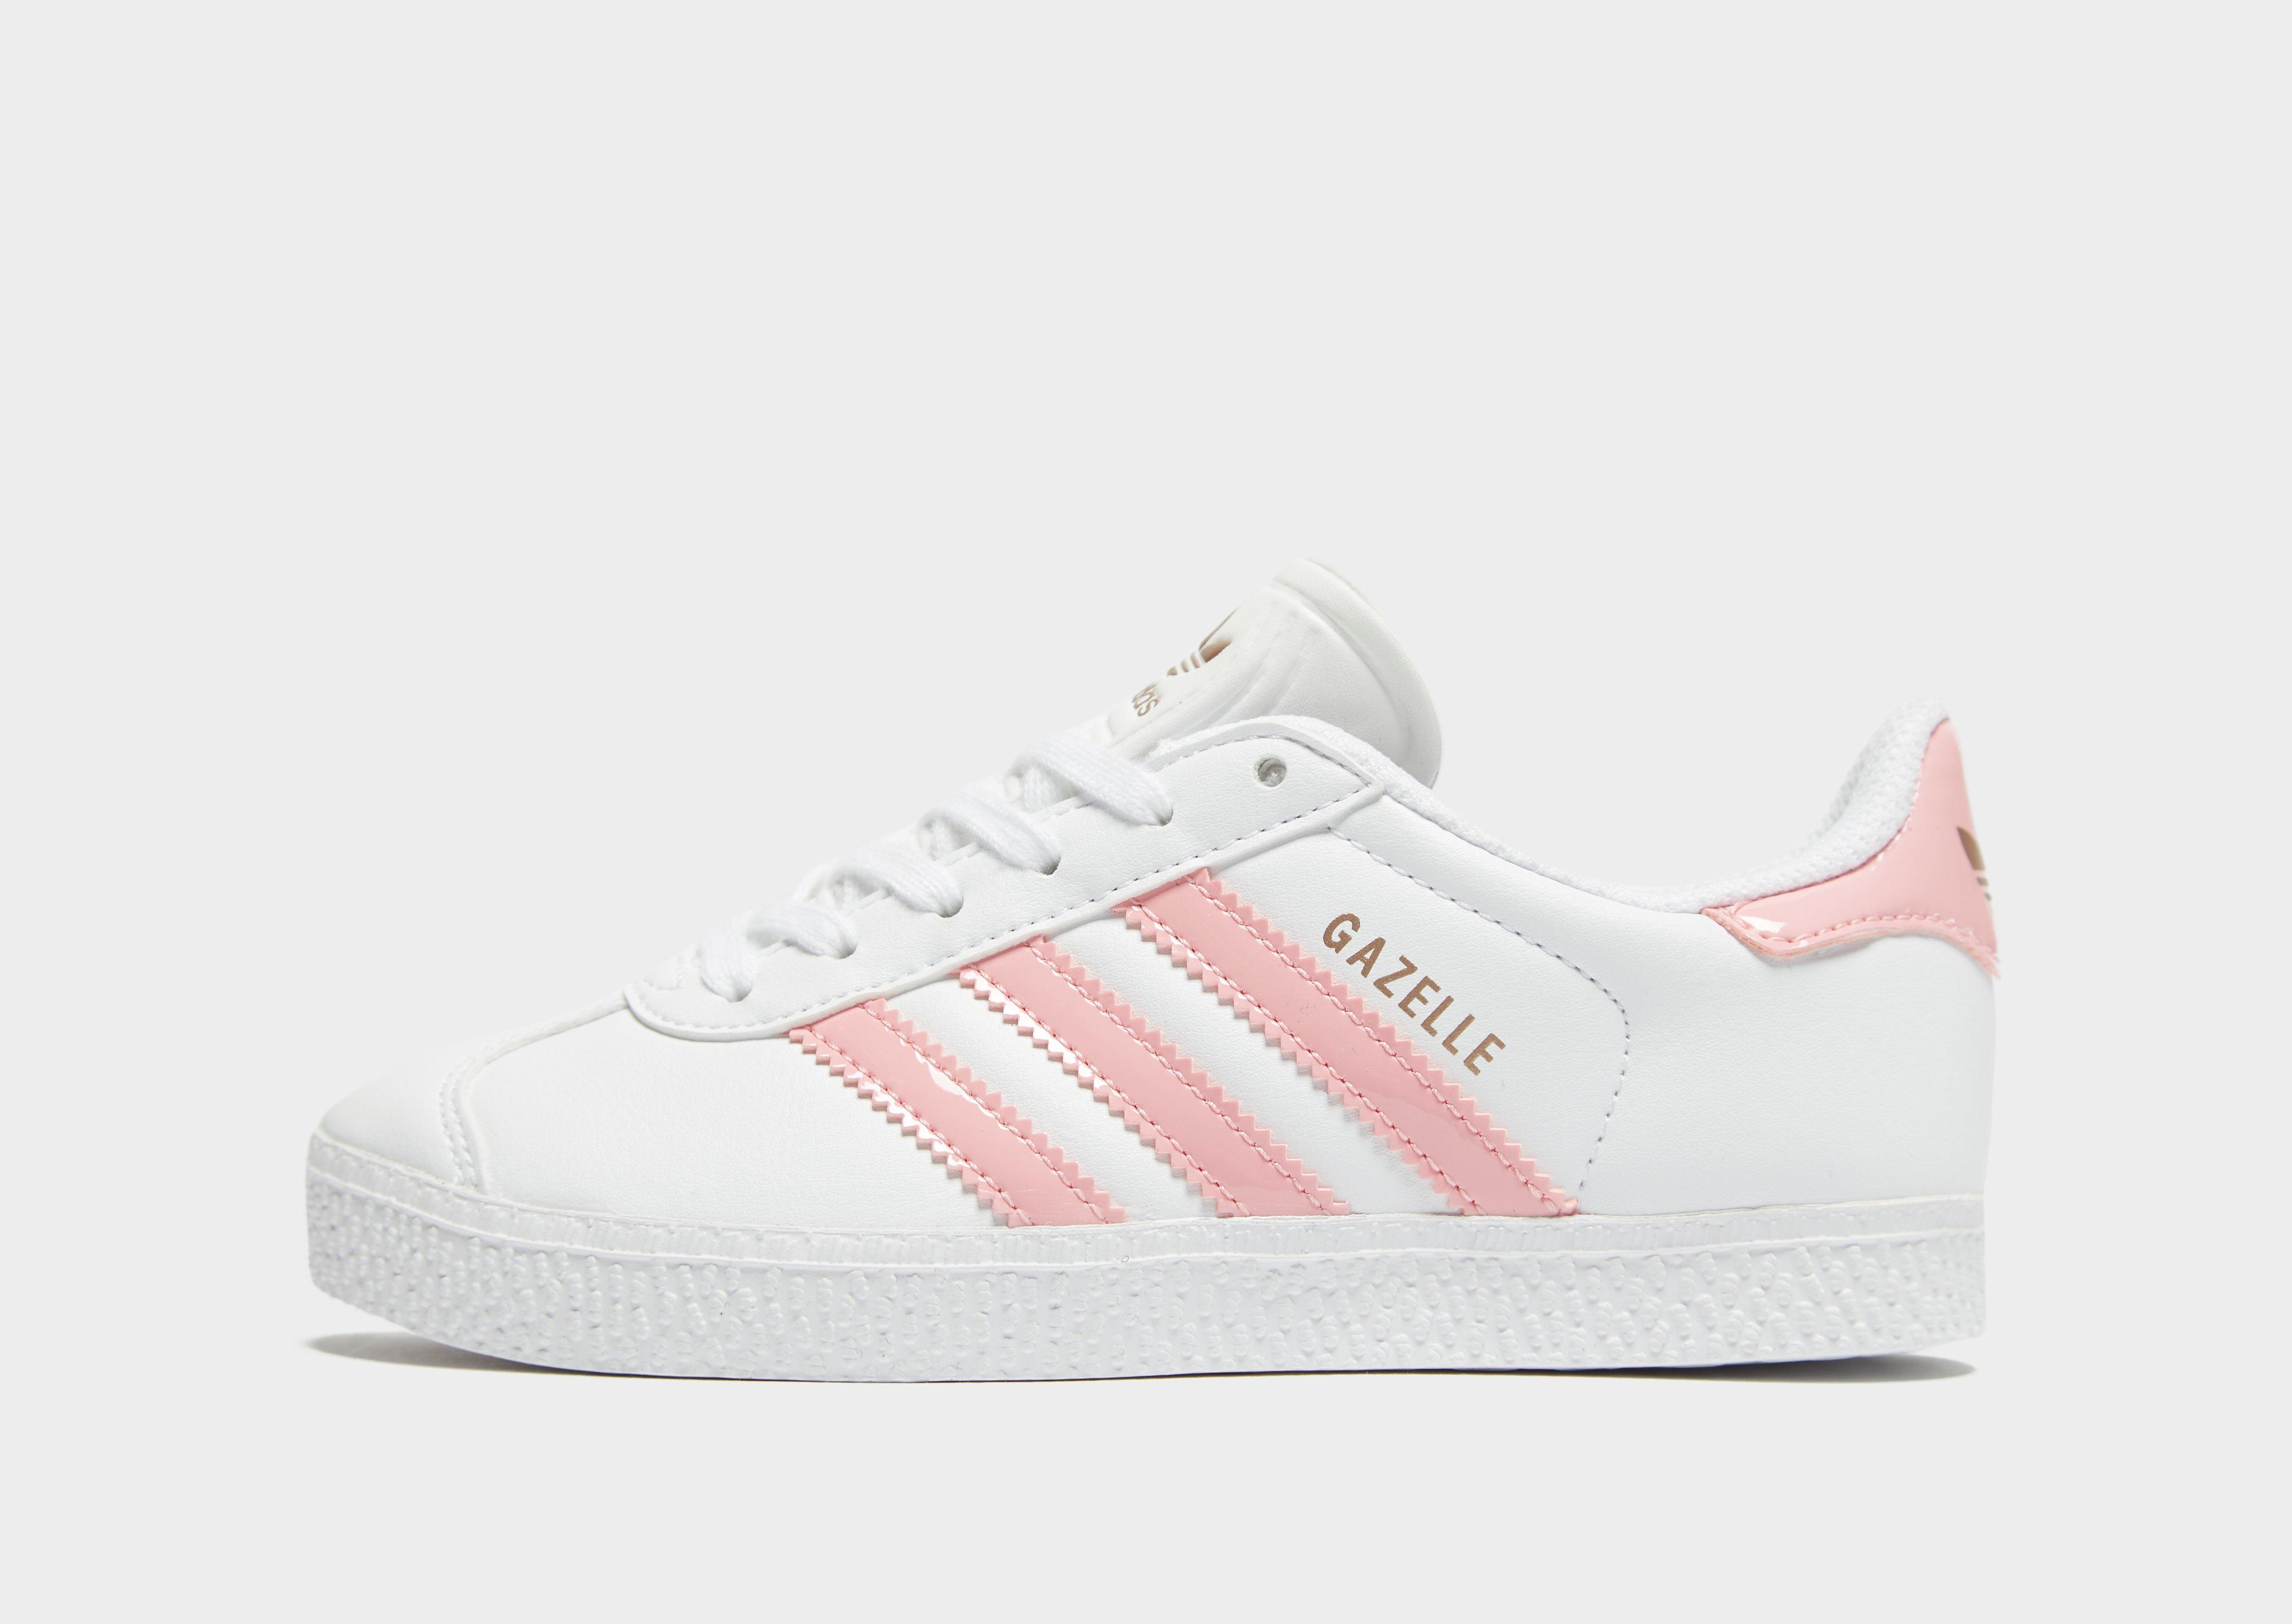 adidas gazelle white with pink stripes